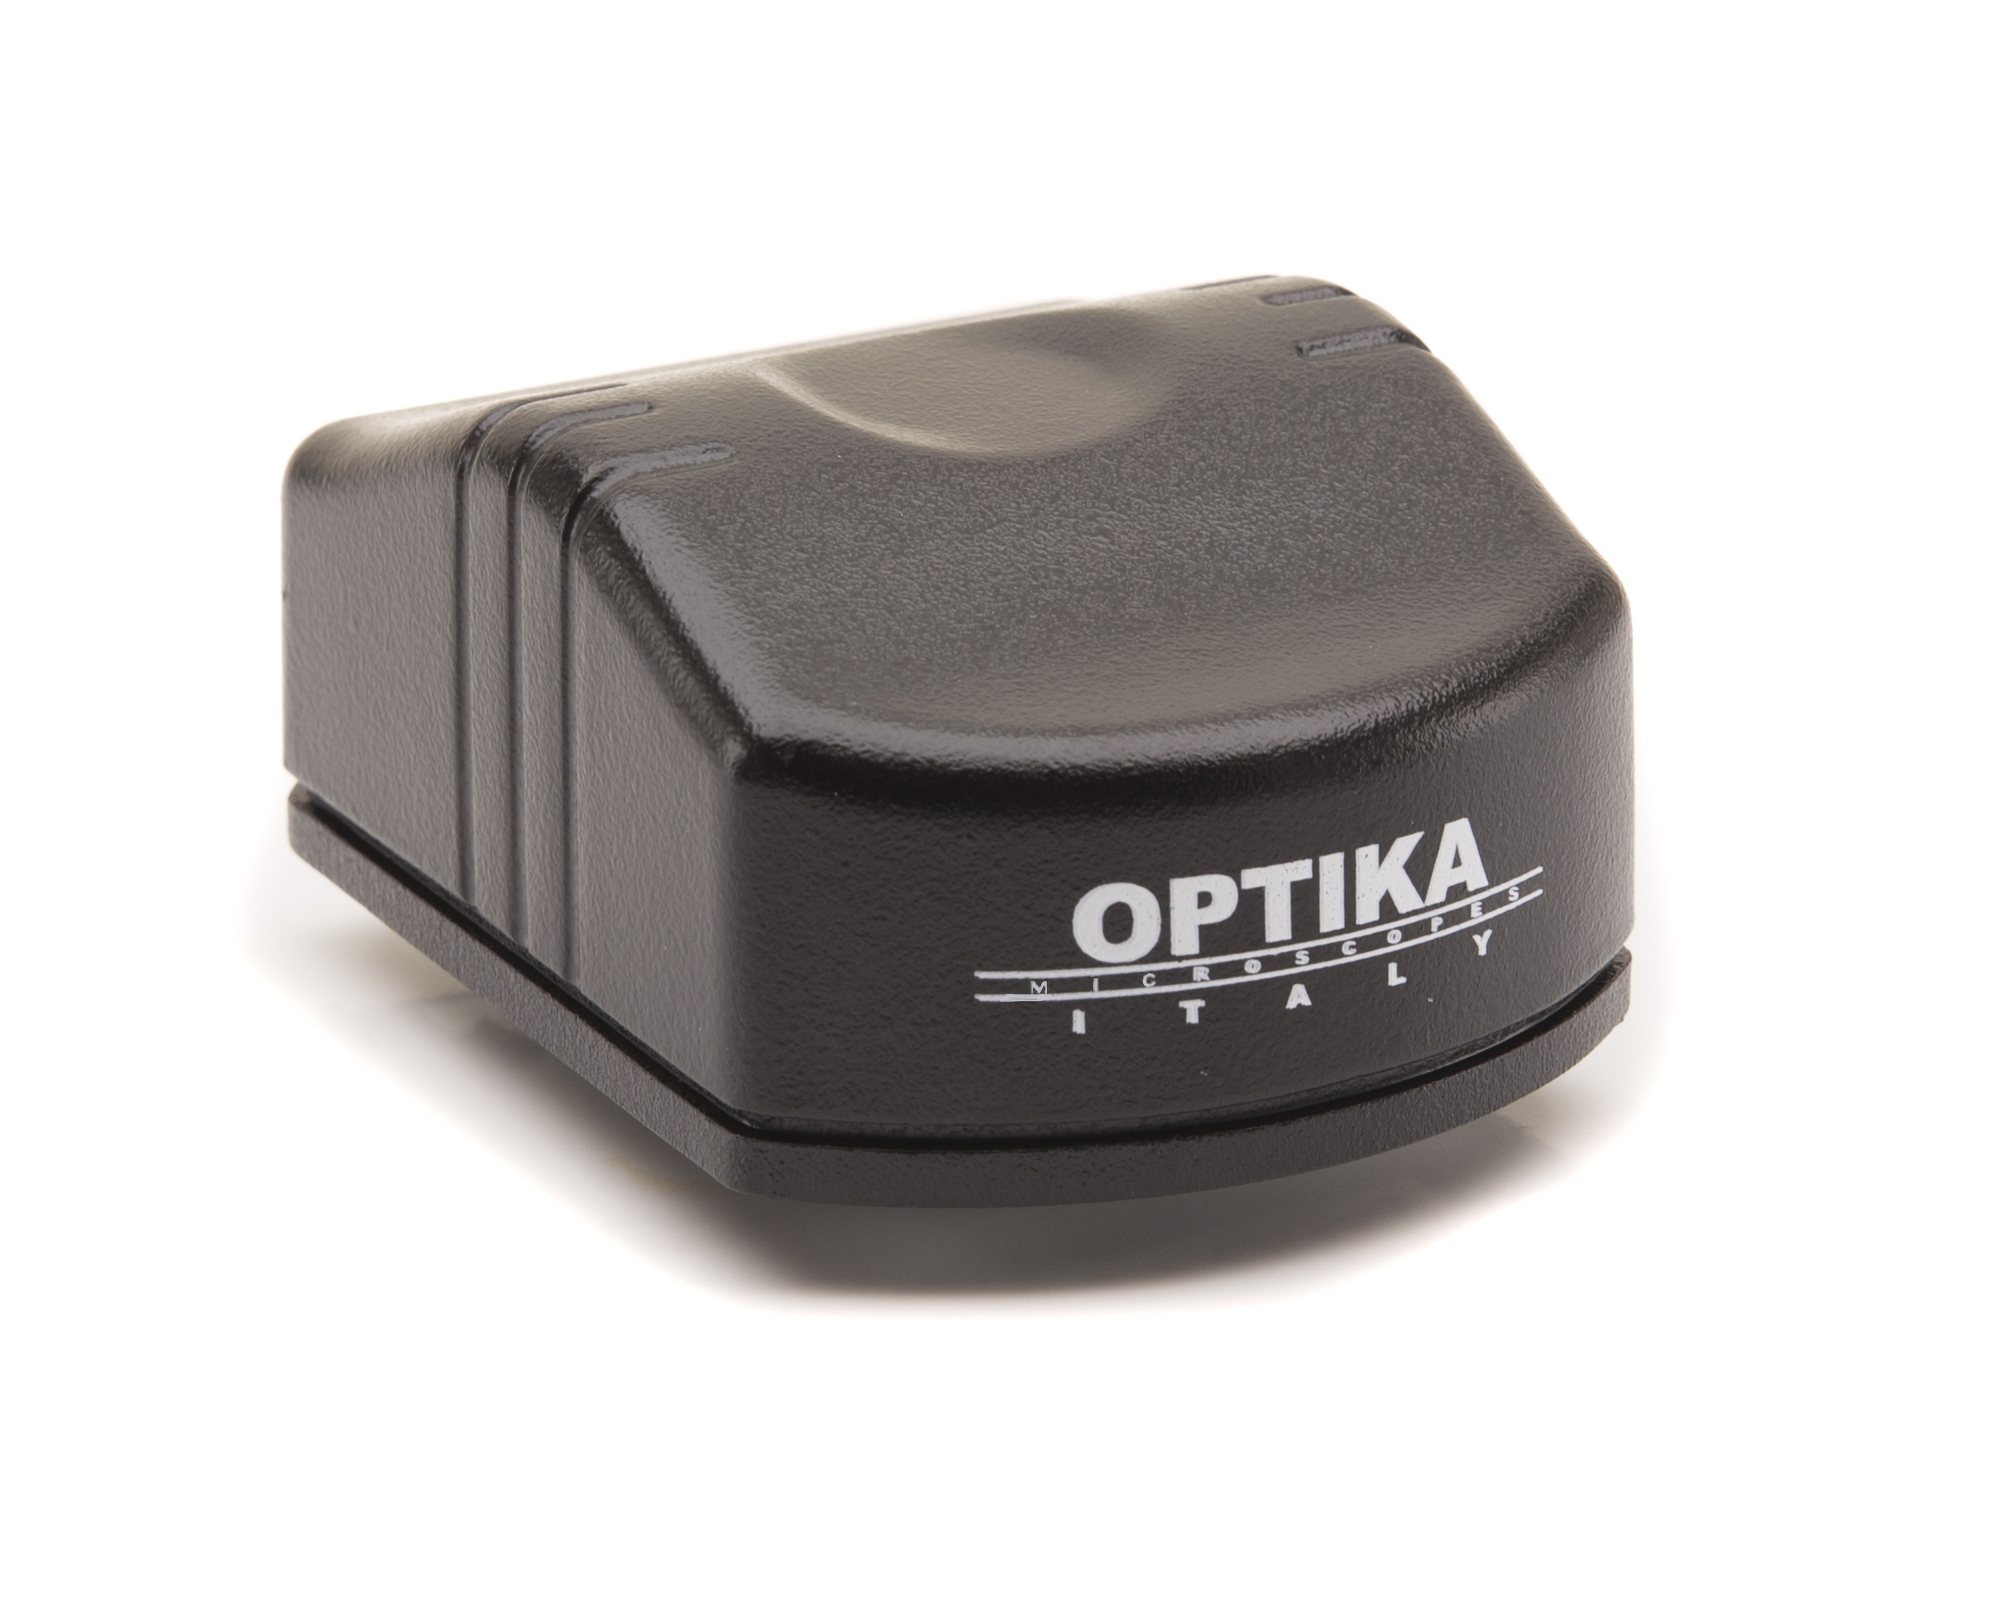 Optika Digtial Camera